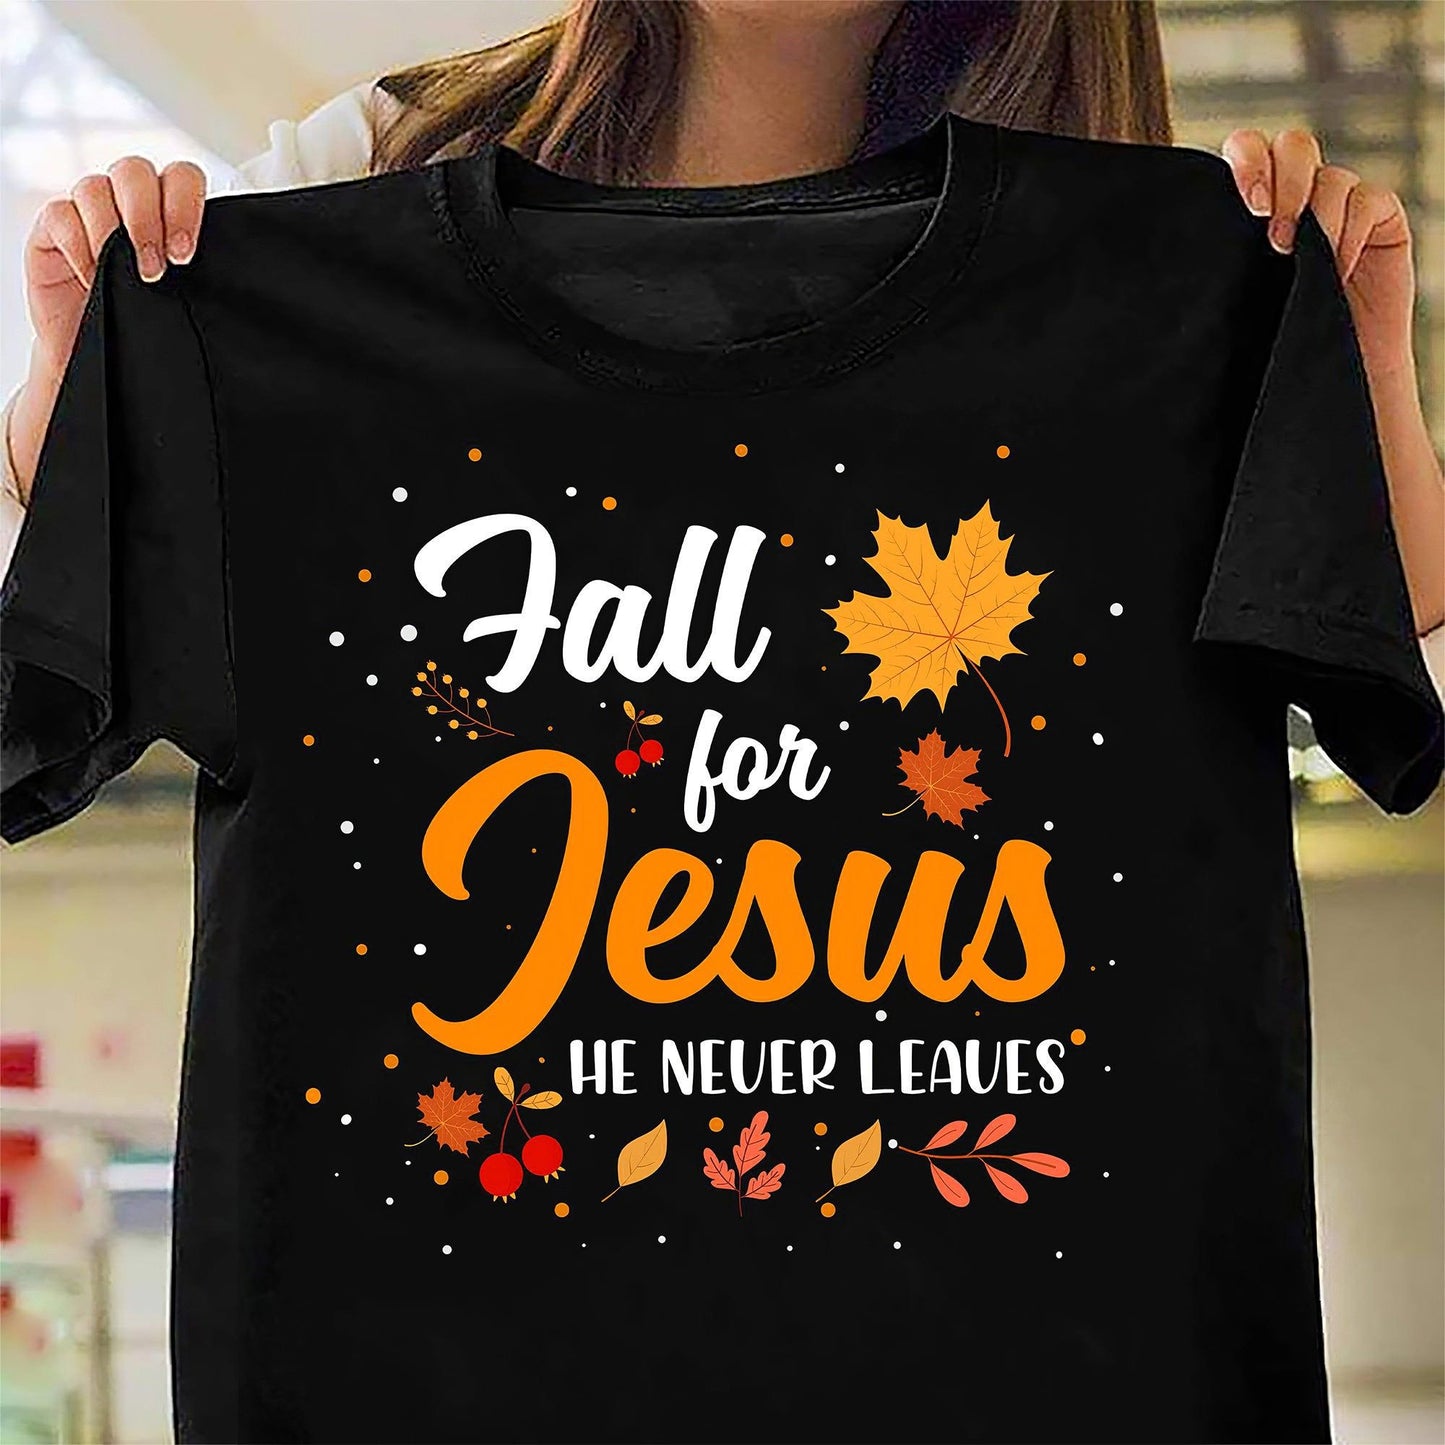 I Love Jesus Black T-Shirt B